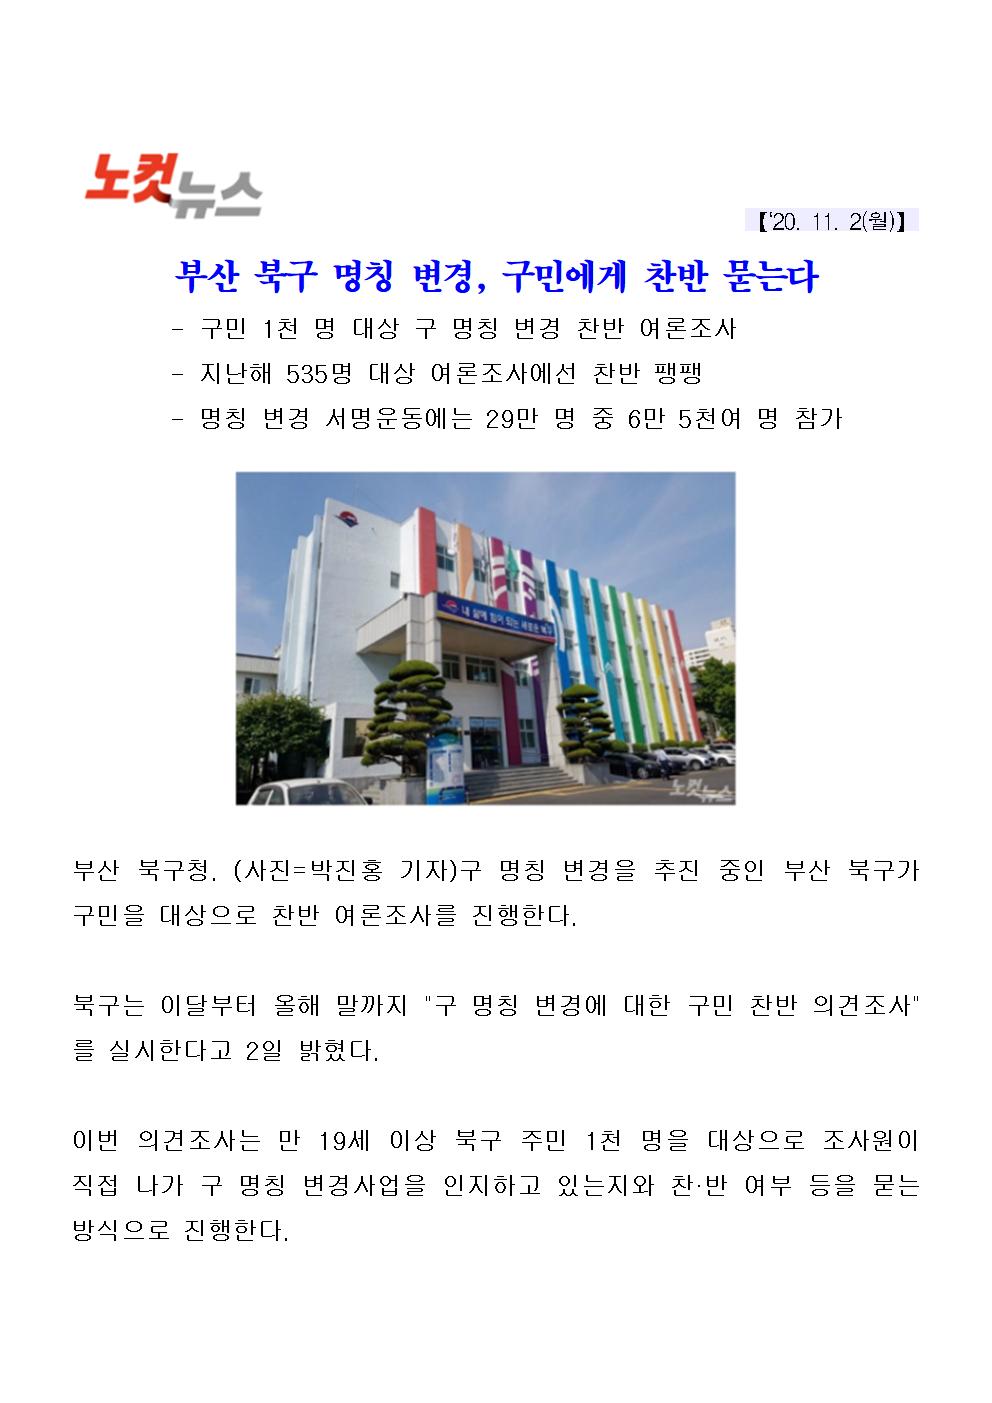 (20.11.02) 부산 북구 명칭 변경, 구민에게 찬반 묻는다(5-1-22)